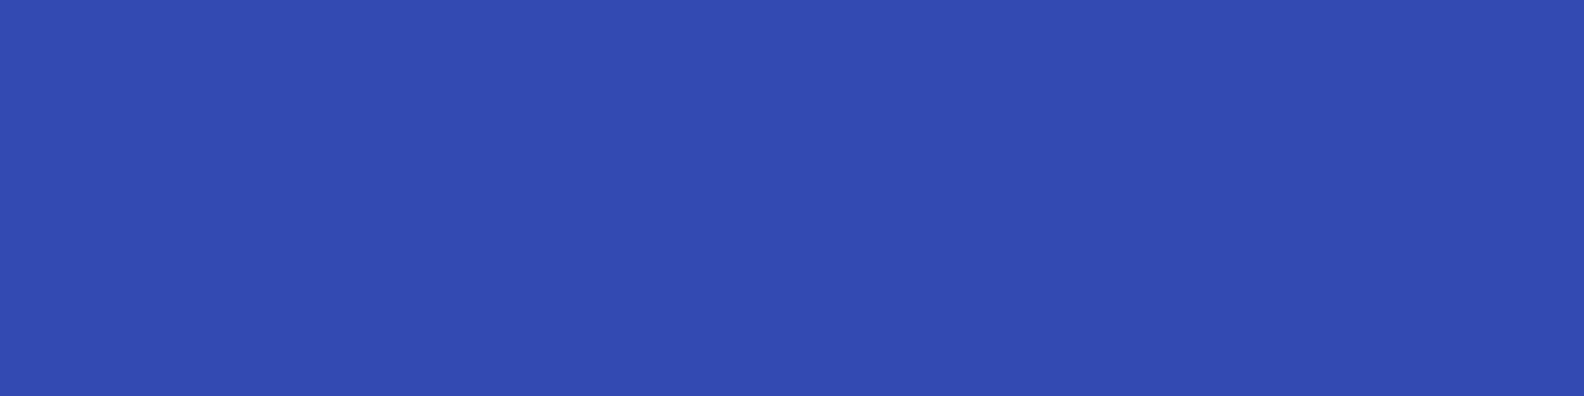 1584x396 Violet-blue Solid Color Background